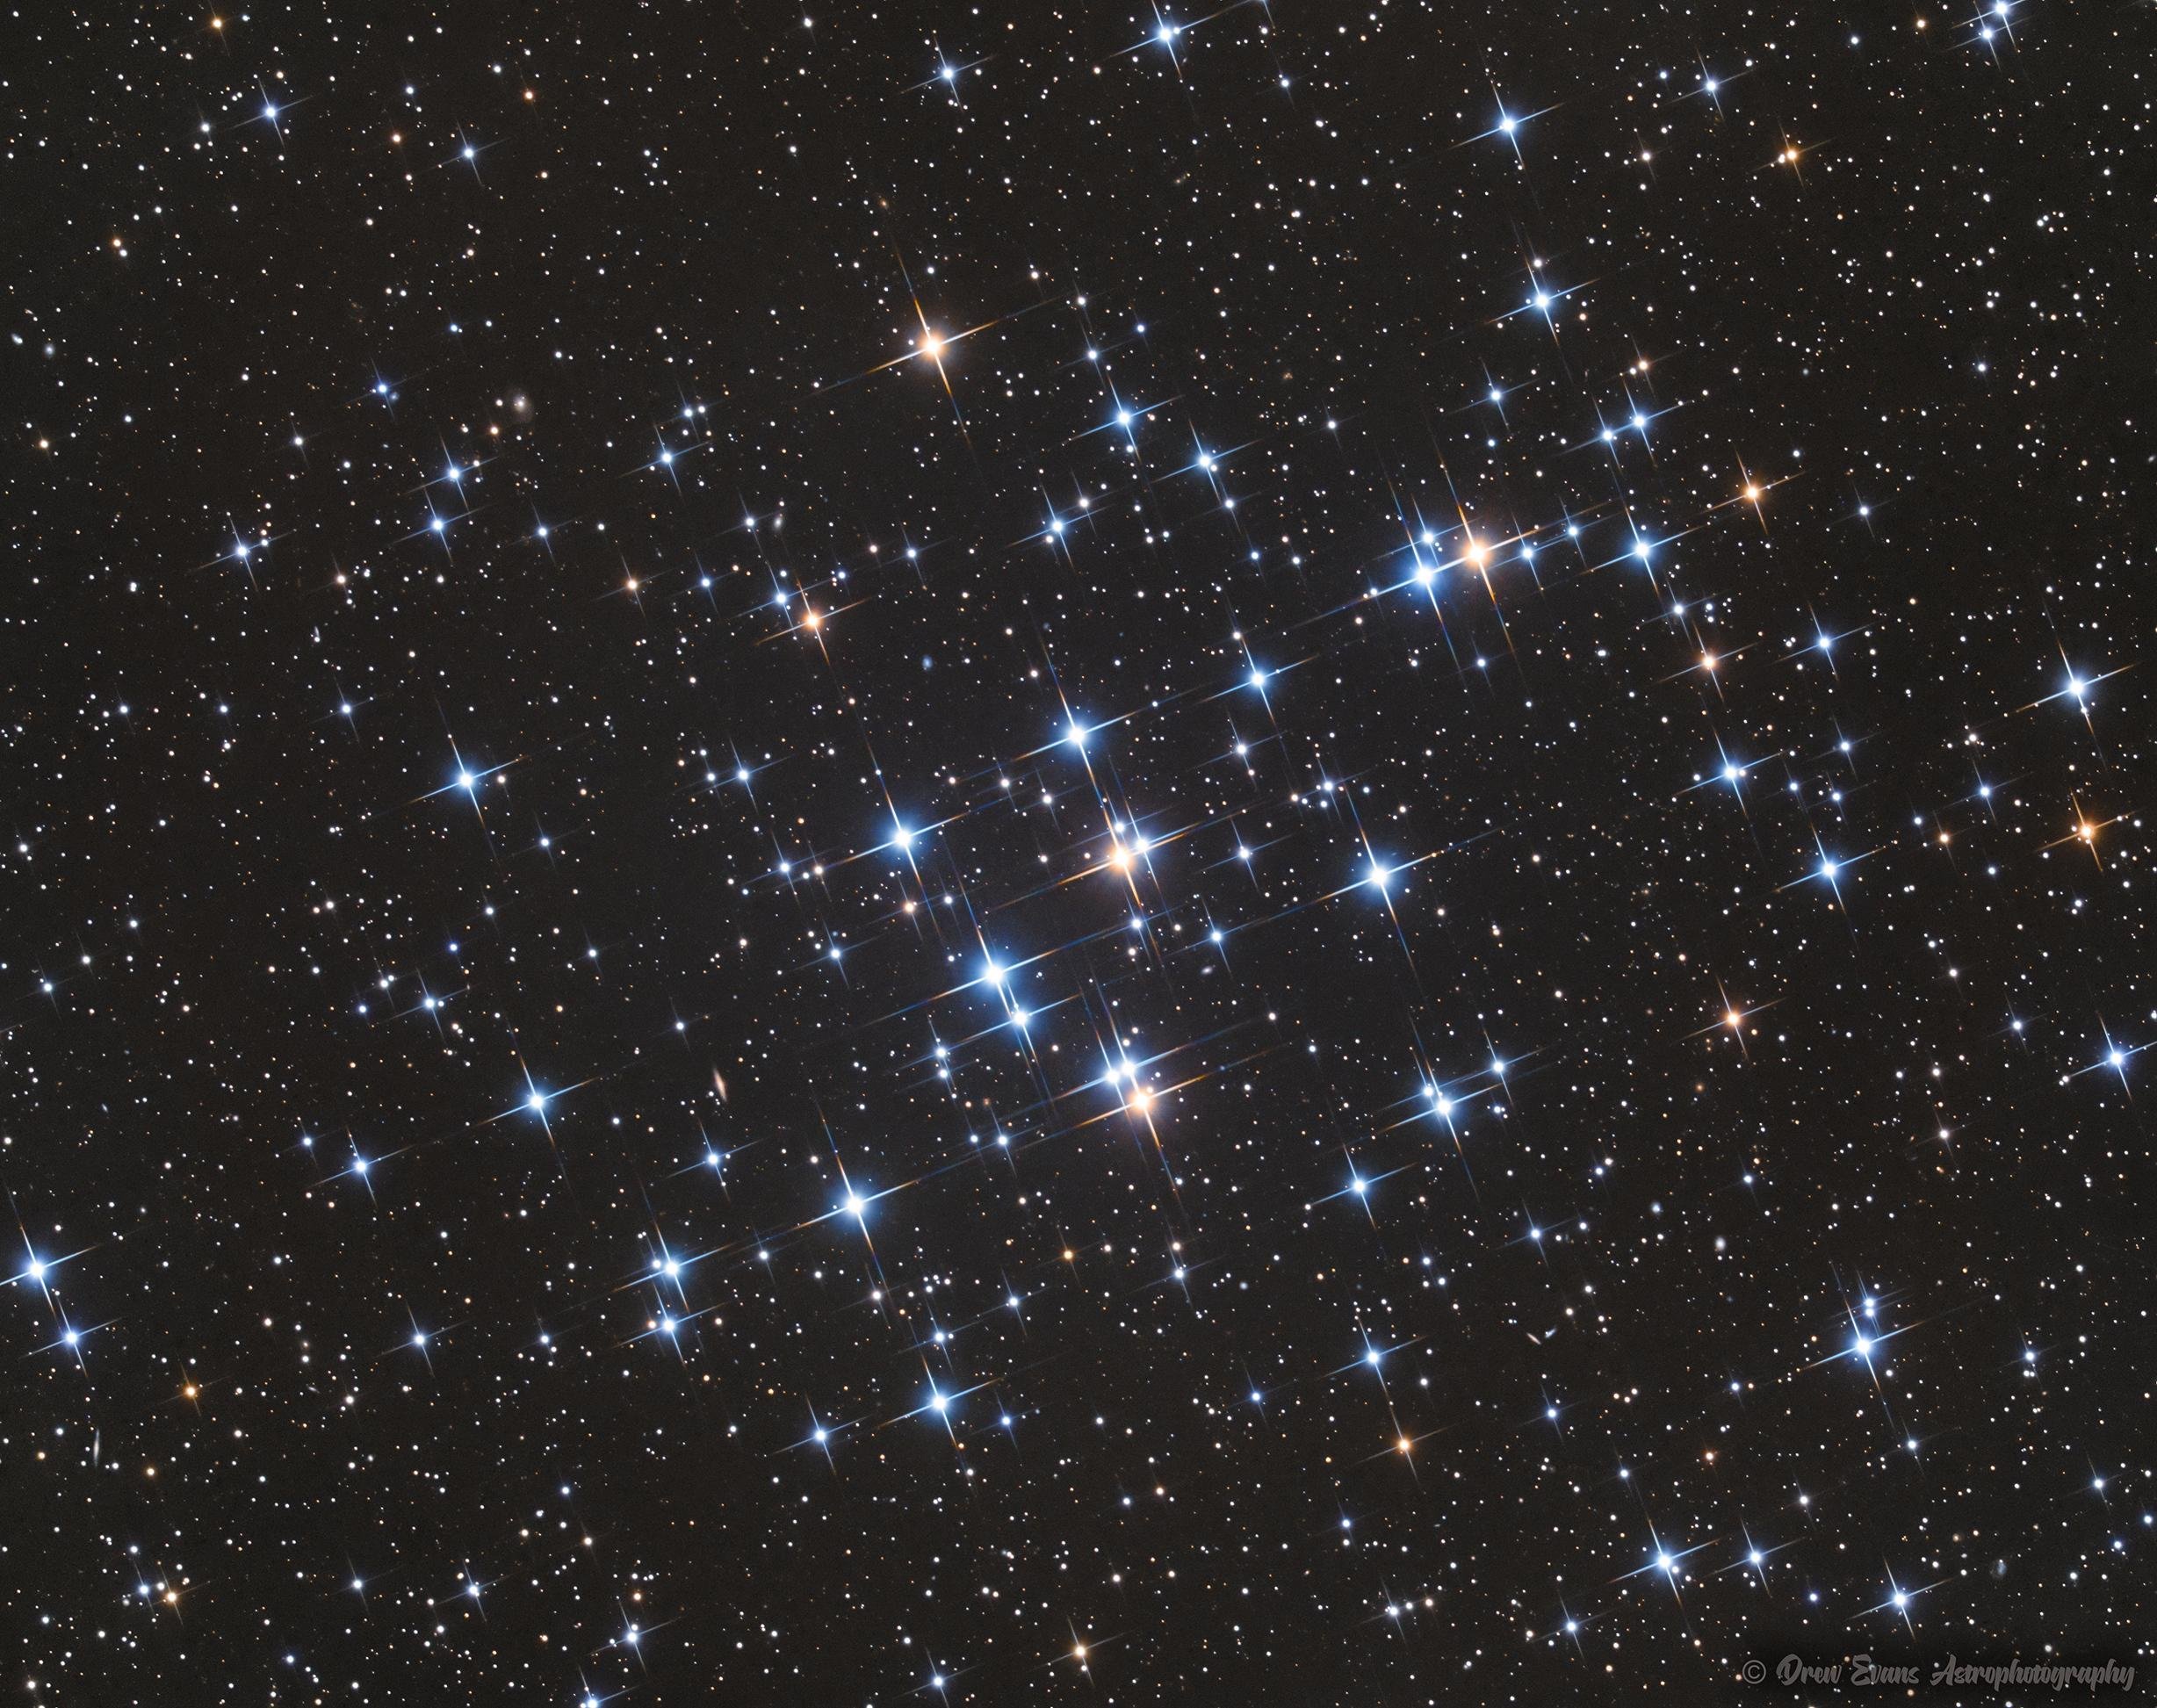 O aglomerado estelar aberto da Colmeia.